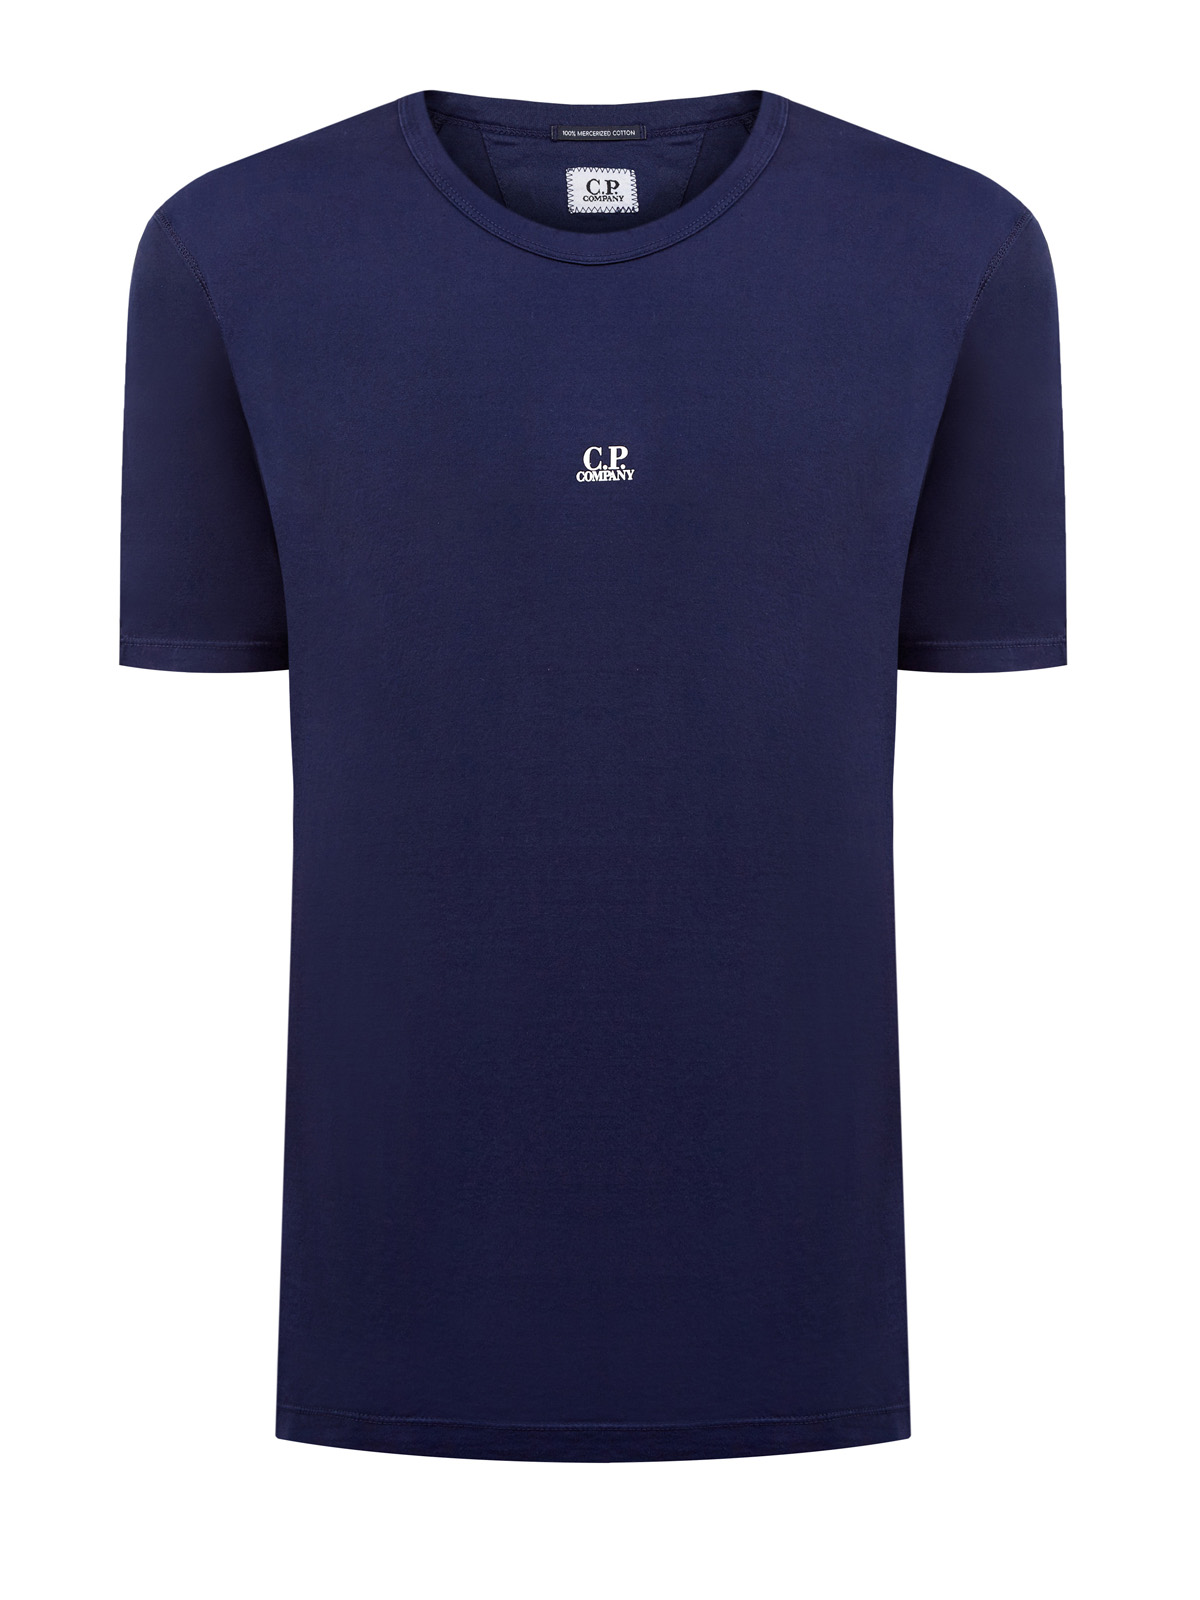 Однотонная футболка из хлопка джерси с логотипом C.P.COMPANY, цвет синий, размер 46;48;50;52;54;56 - фото 1